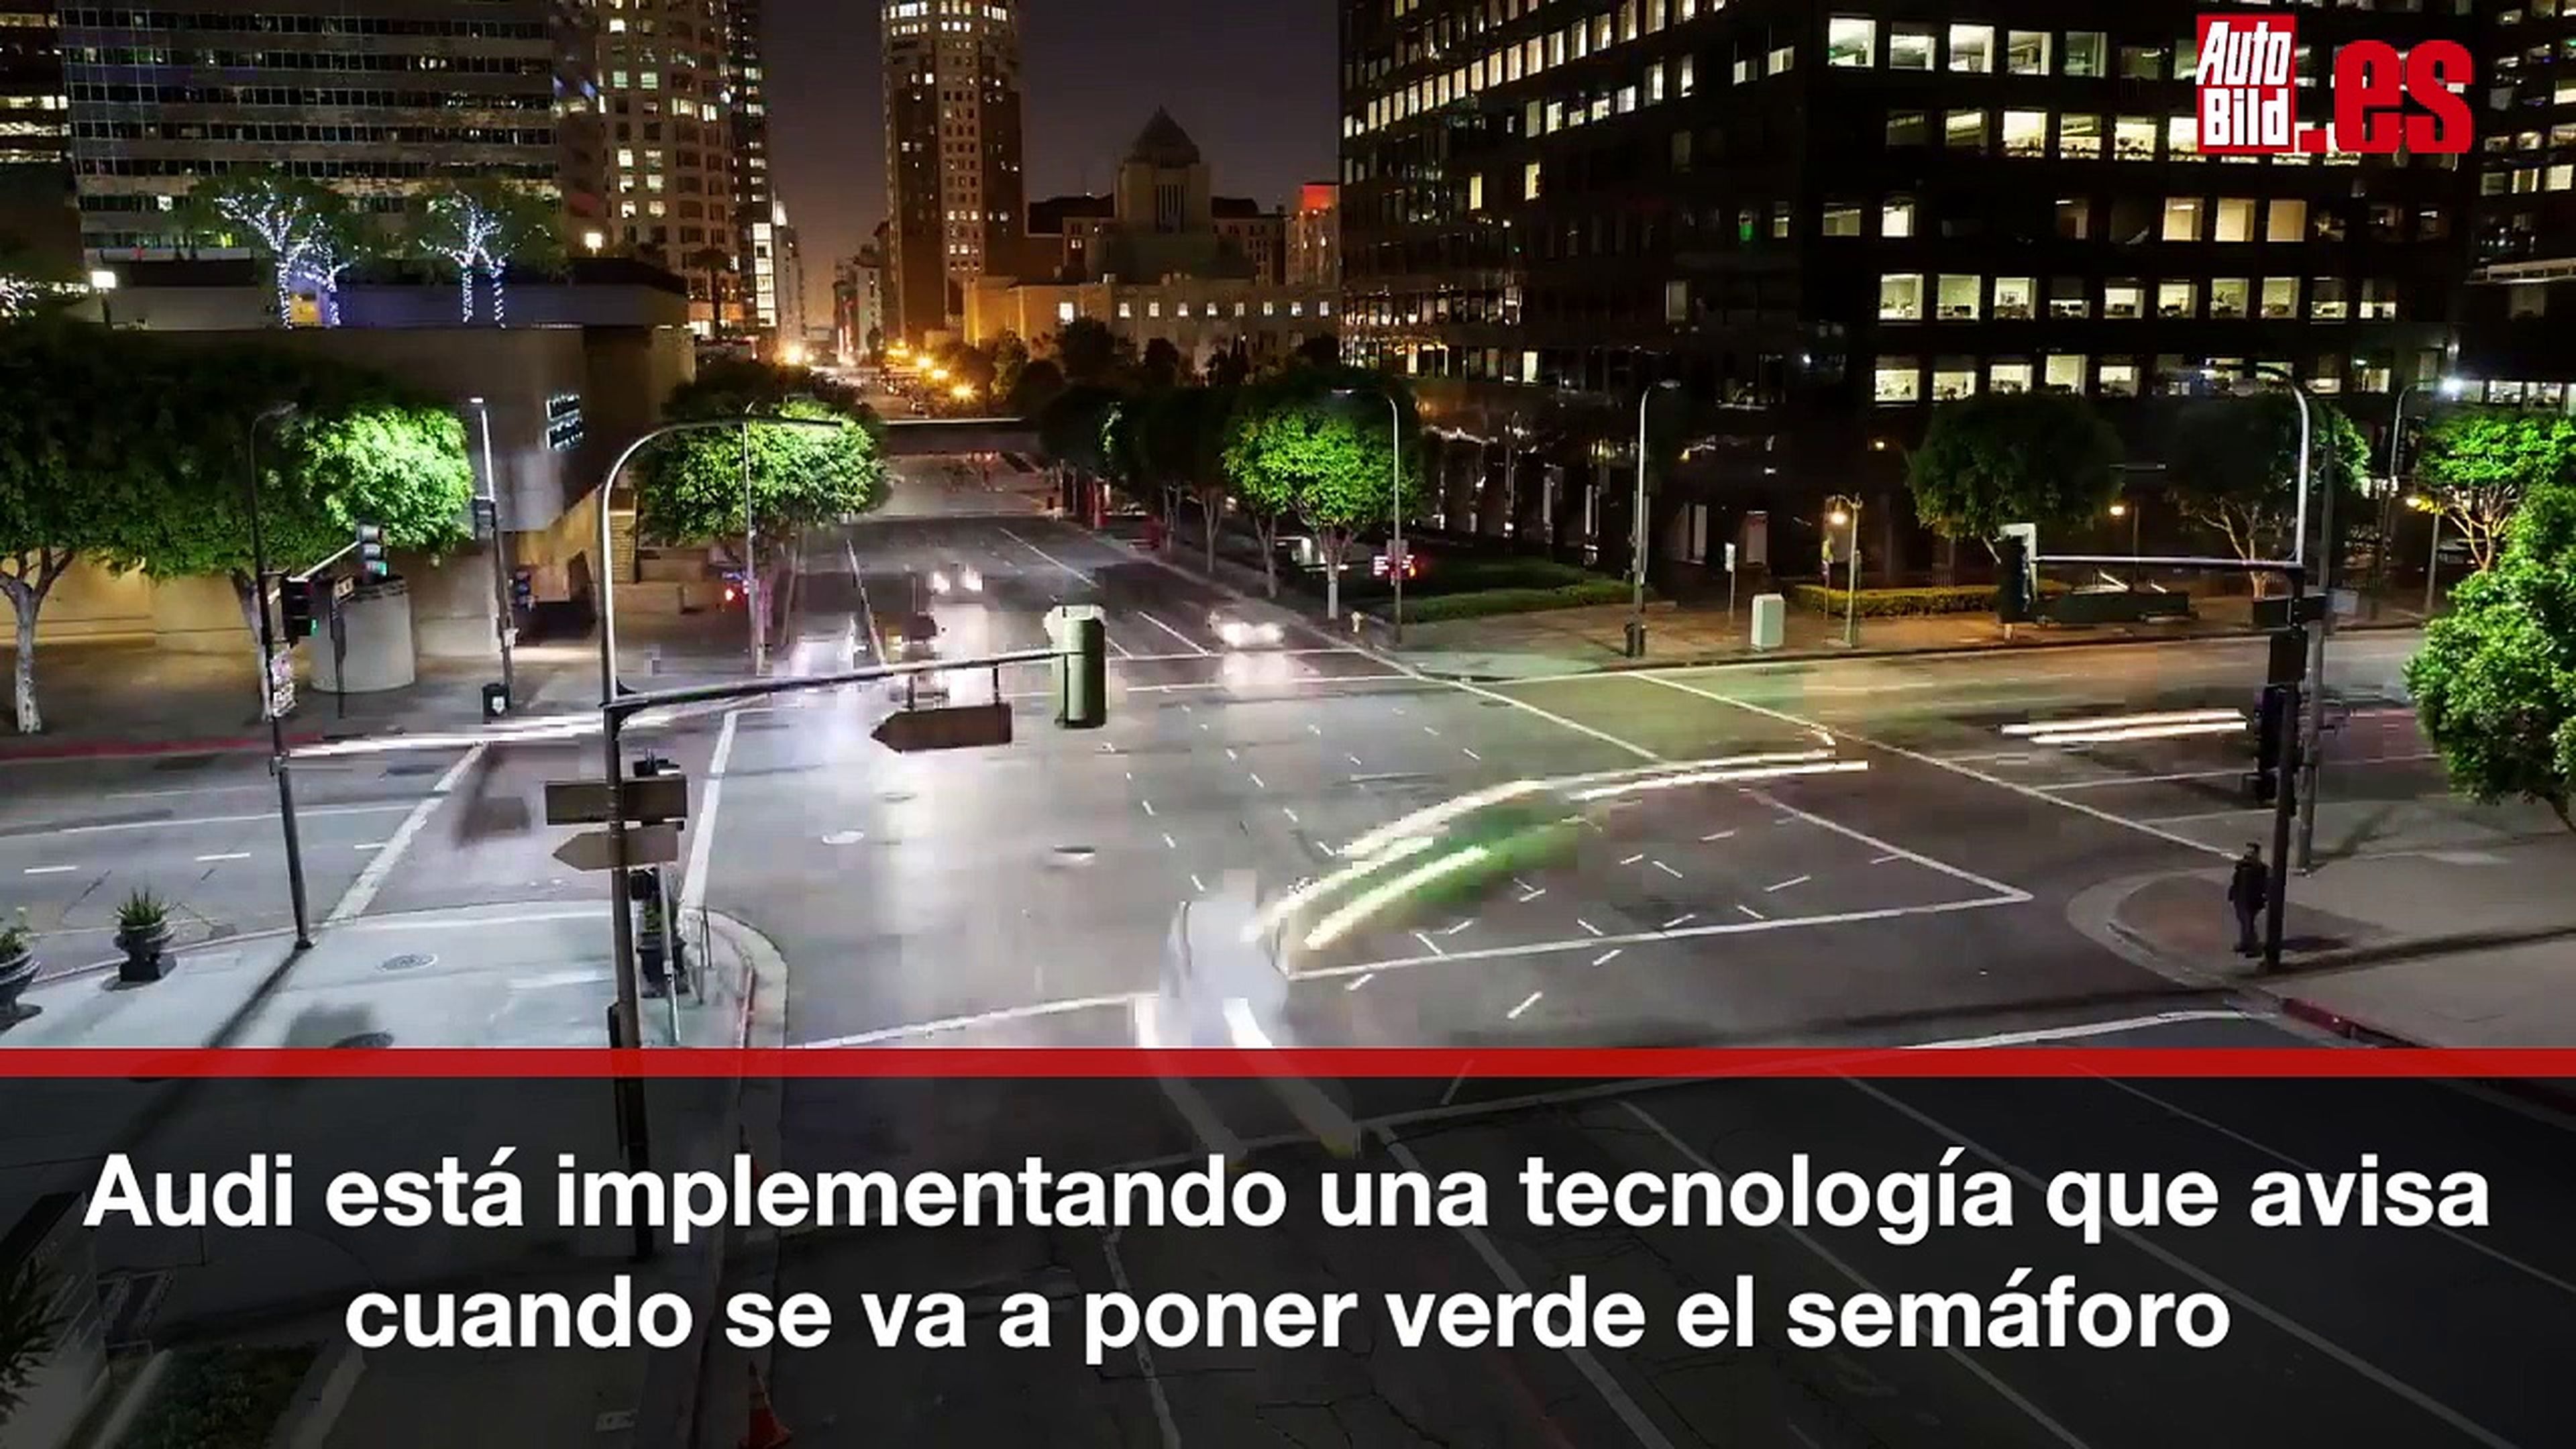 VÍDEO: La nueva tecnología de Audi que avisa de cuando se va a poner verde el semáforo